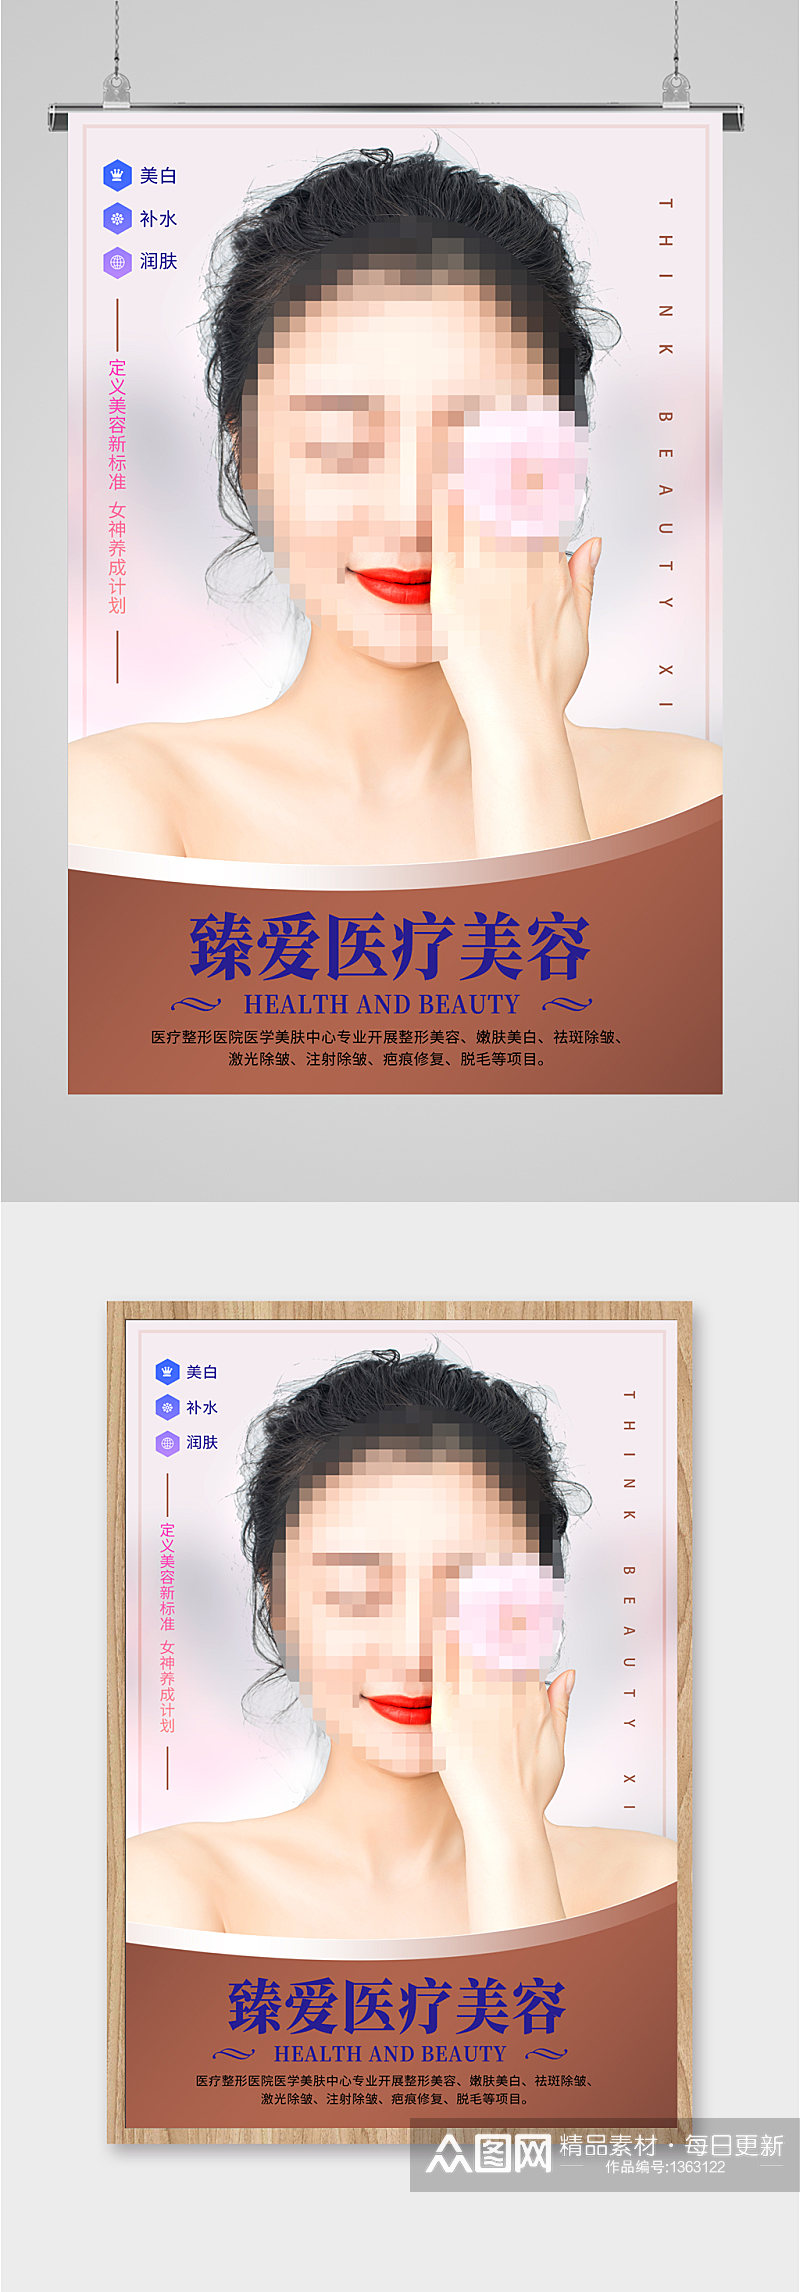 医疗美容机构宣传海报展板素材